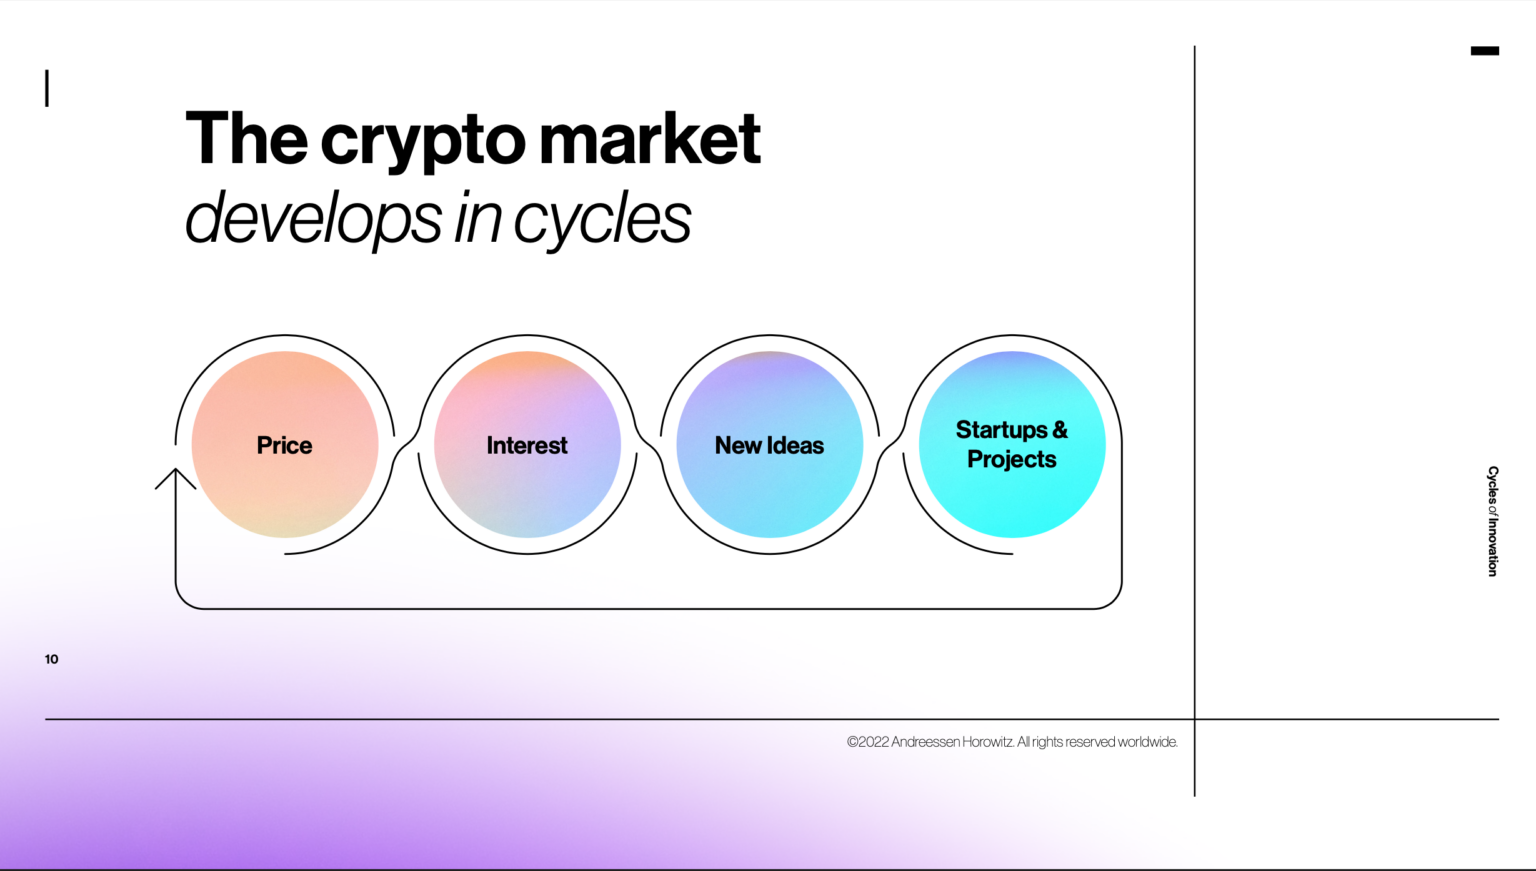 Сущность рыночных циклов крипторынка на примере отчета Andreessen Horowitz